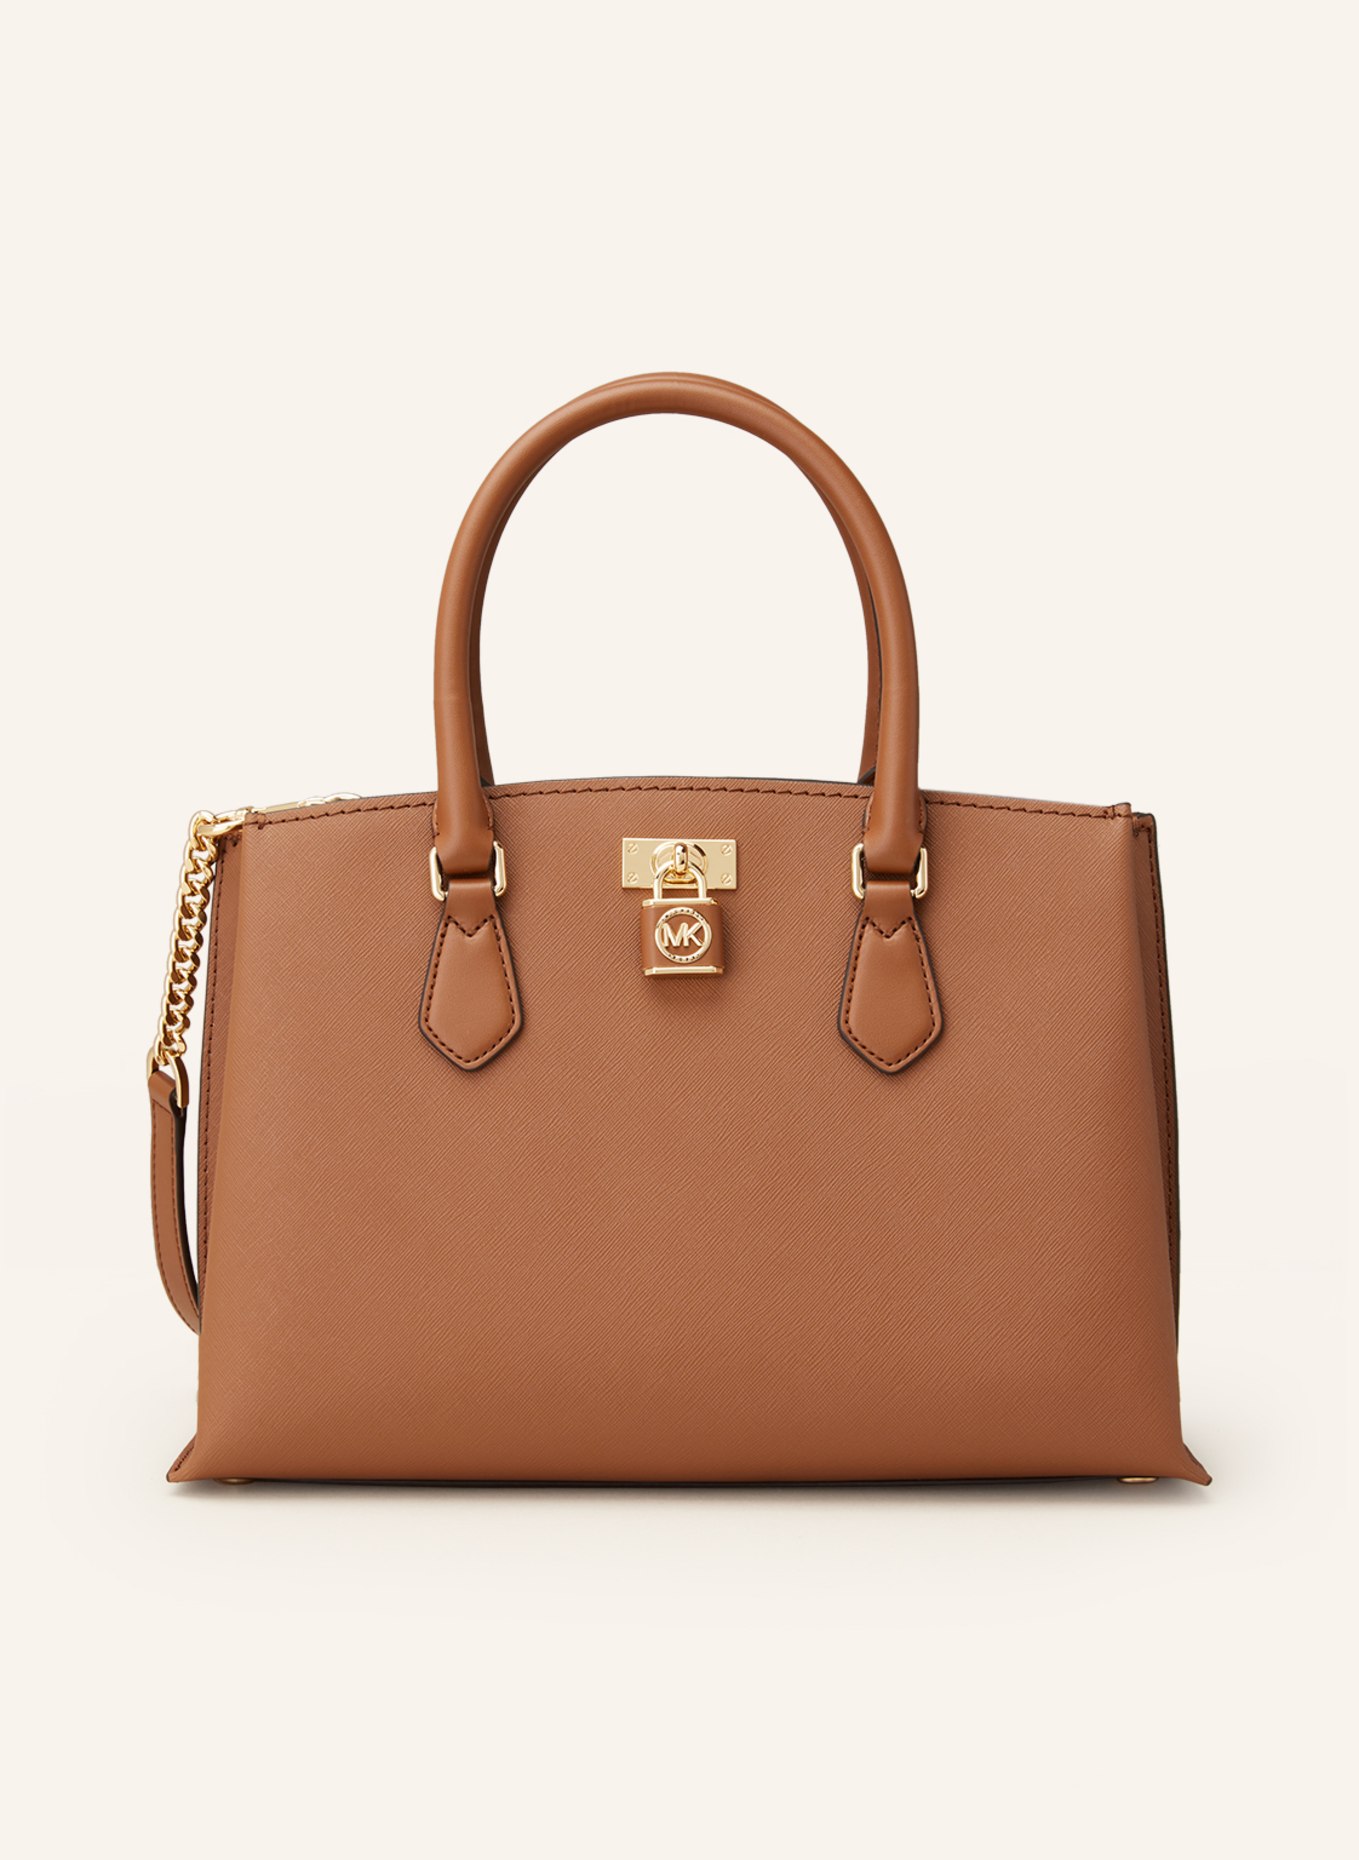 MICHAEL KORS Saffiano handbag RUBY, Color: 230 LUGGAGE (Image 1)